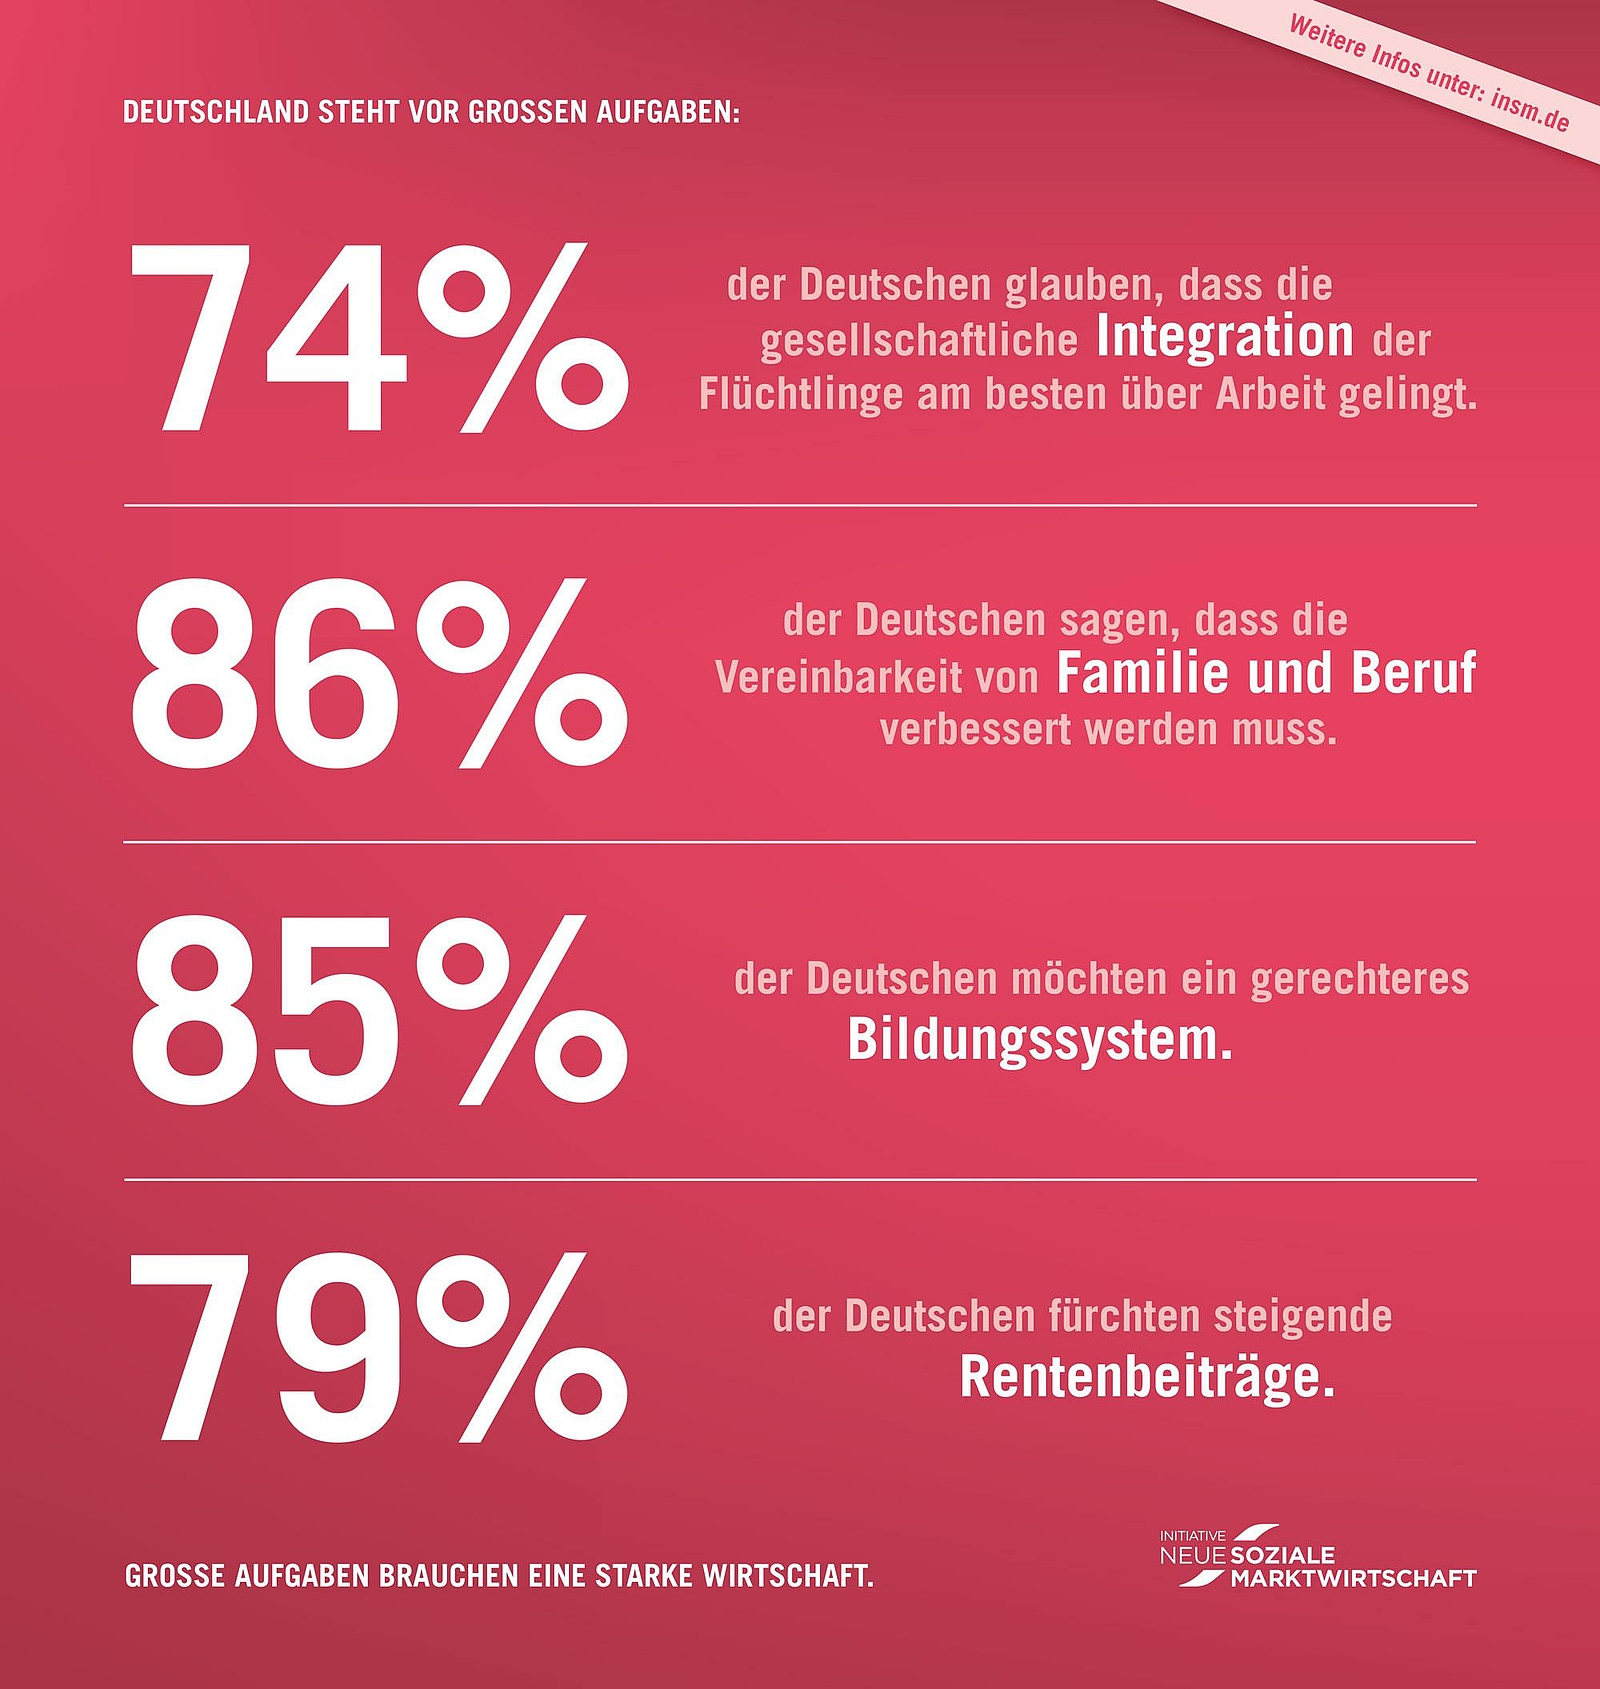 Anzeigenmotiv der INSM - 74% der Deutschen glauben, dass die gesellschaftliche Integration der Flüchtlingeam besten über die Arbeit gelingt.